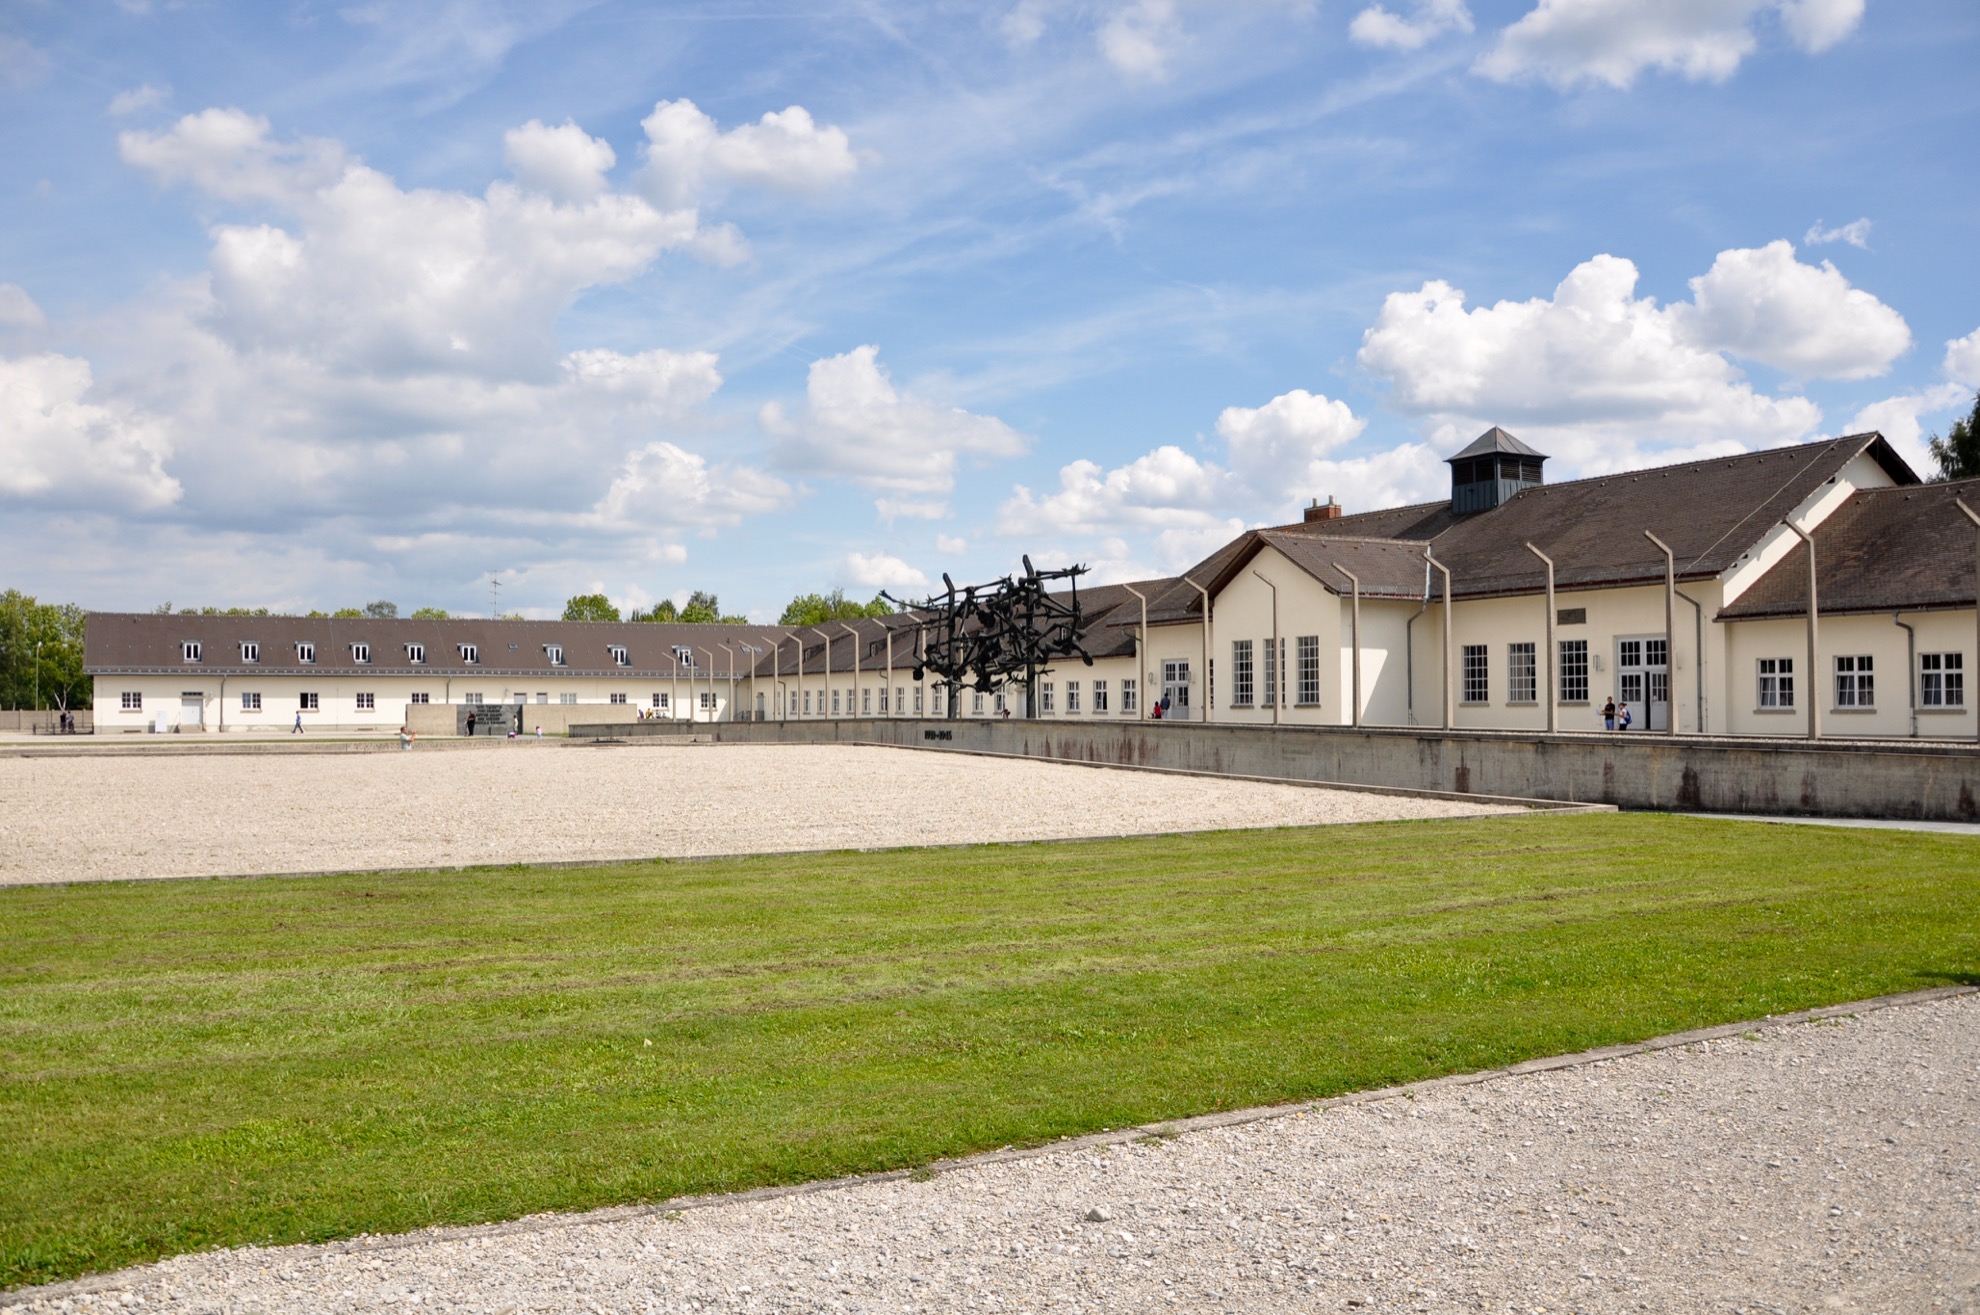 Qué saber sobre el campo de concentración de Dachau antes de visitar - 453